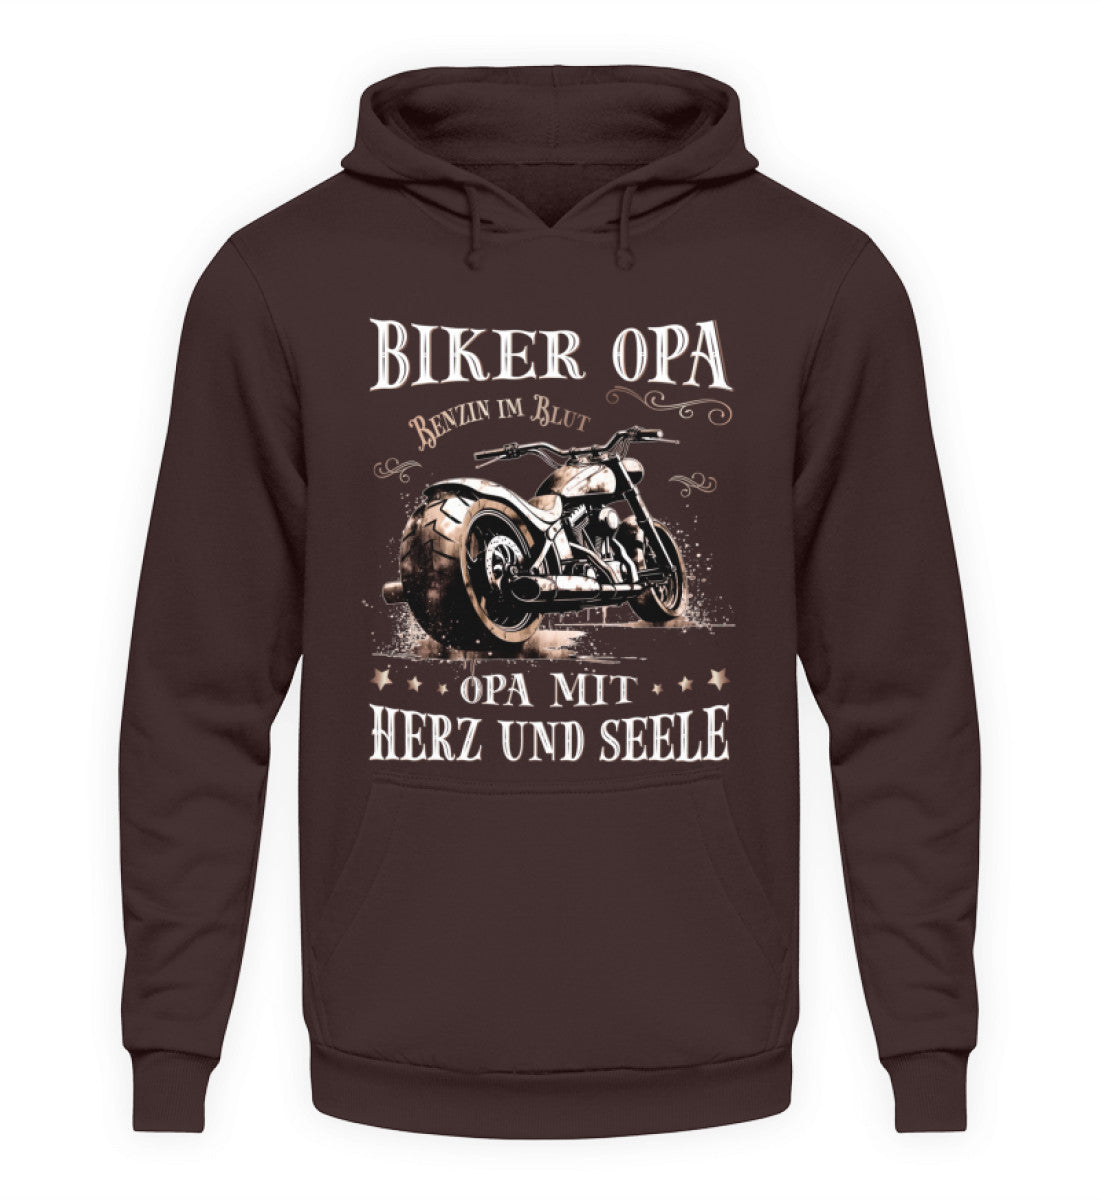 Ein Biker Hoodie für Motorradfahrer von Wingbikers mit dem Aufdruck, Biker Opa - Benzin im Blut - Opa mit Herz und Seele, in braun.